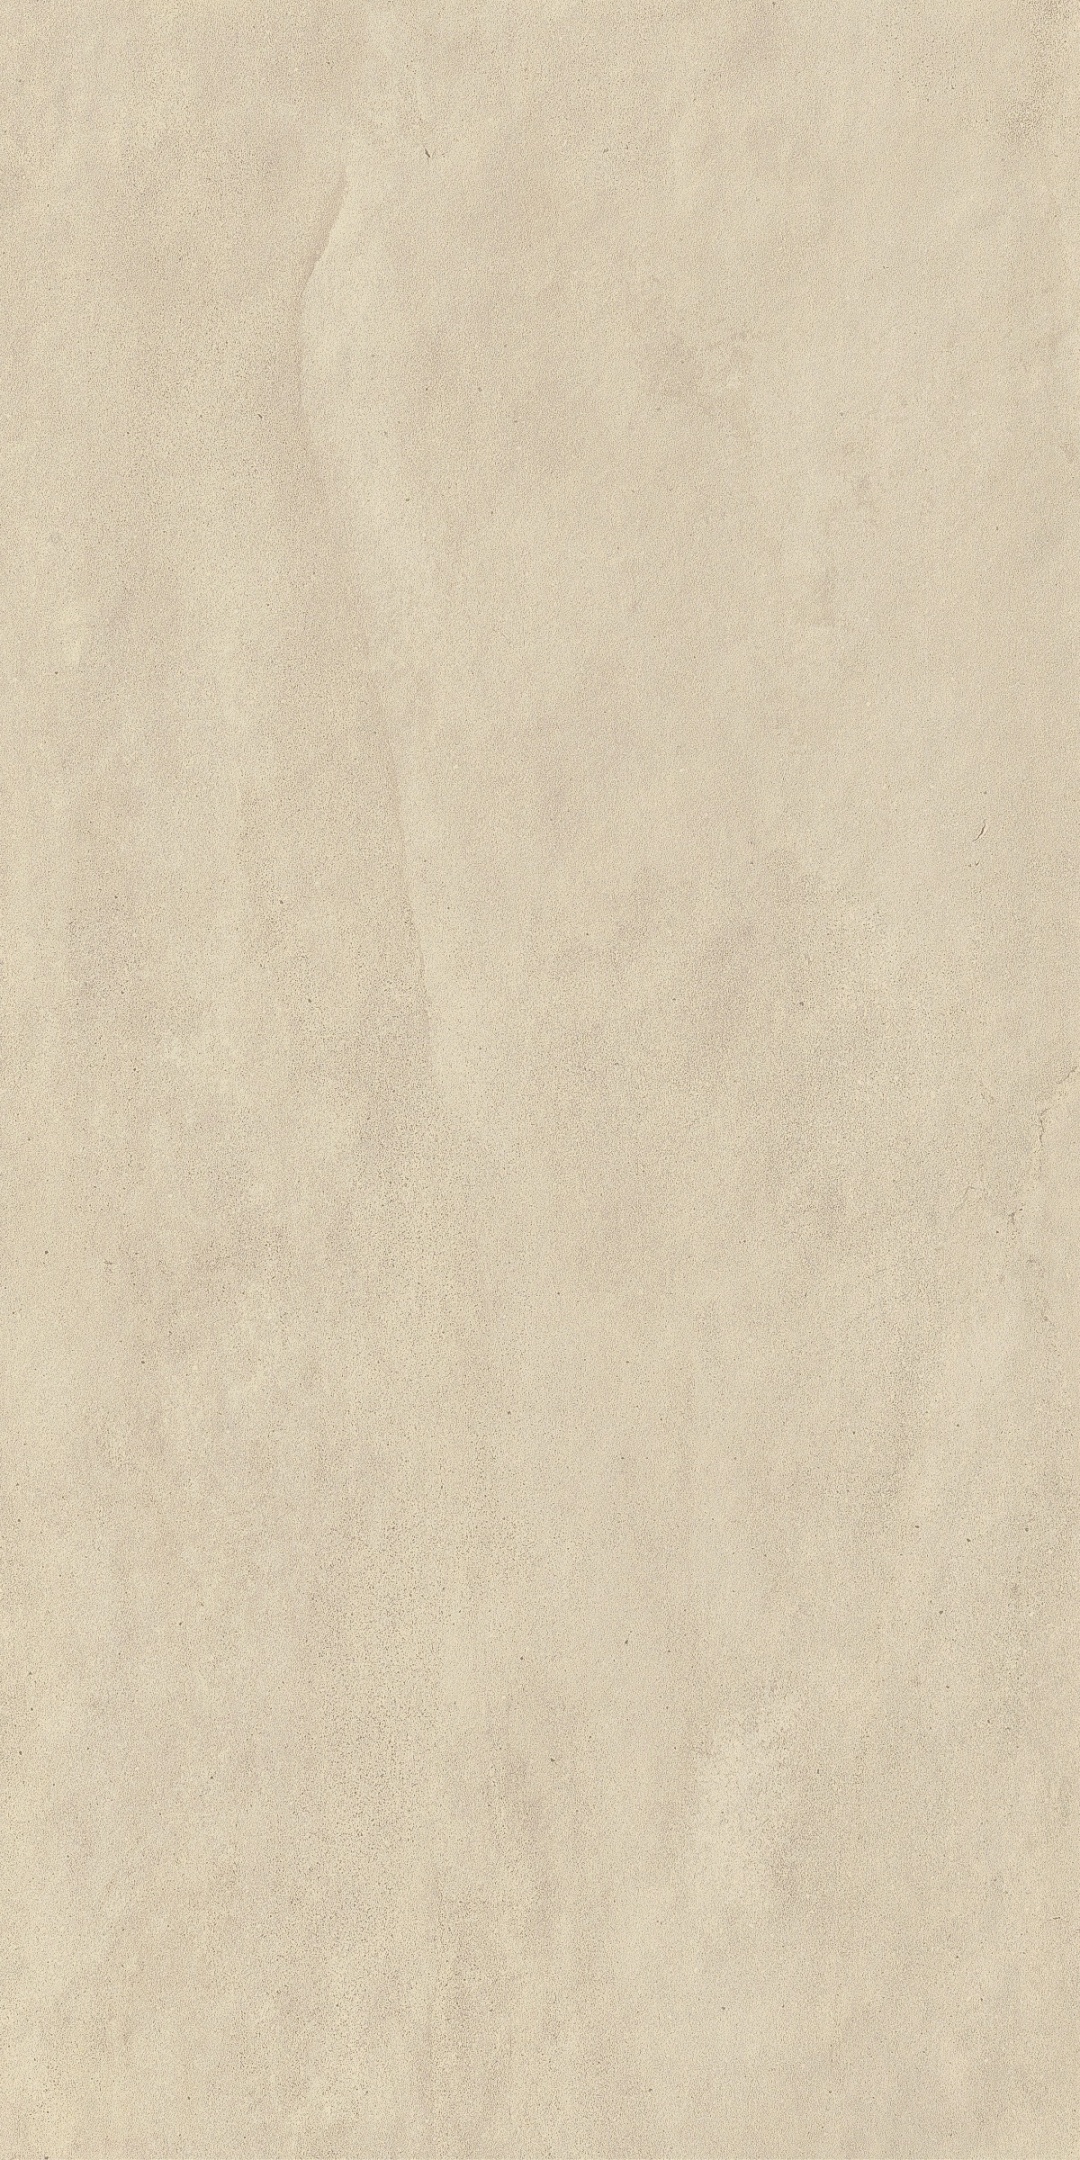 惠达瓷砖西沙系列|质感与视觉碰撞 让空间充满遐想(图30)